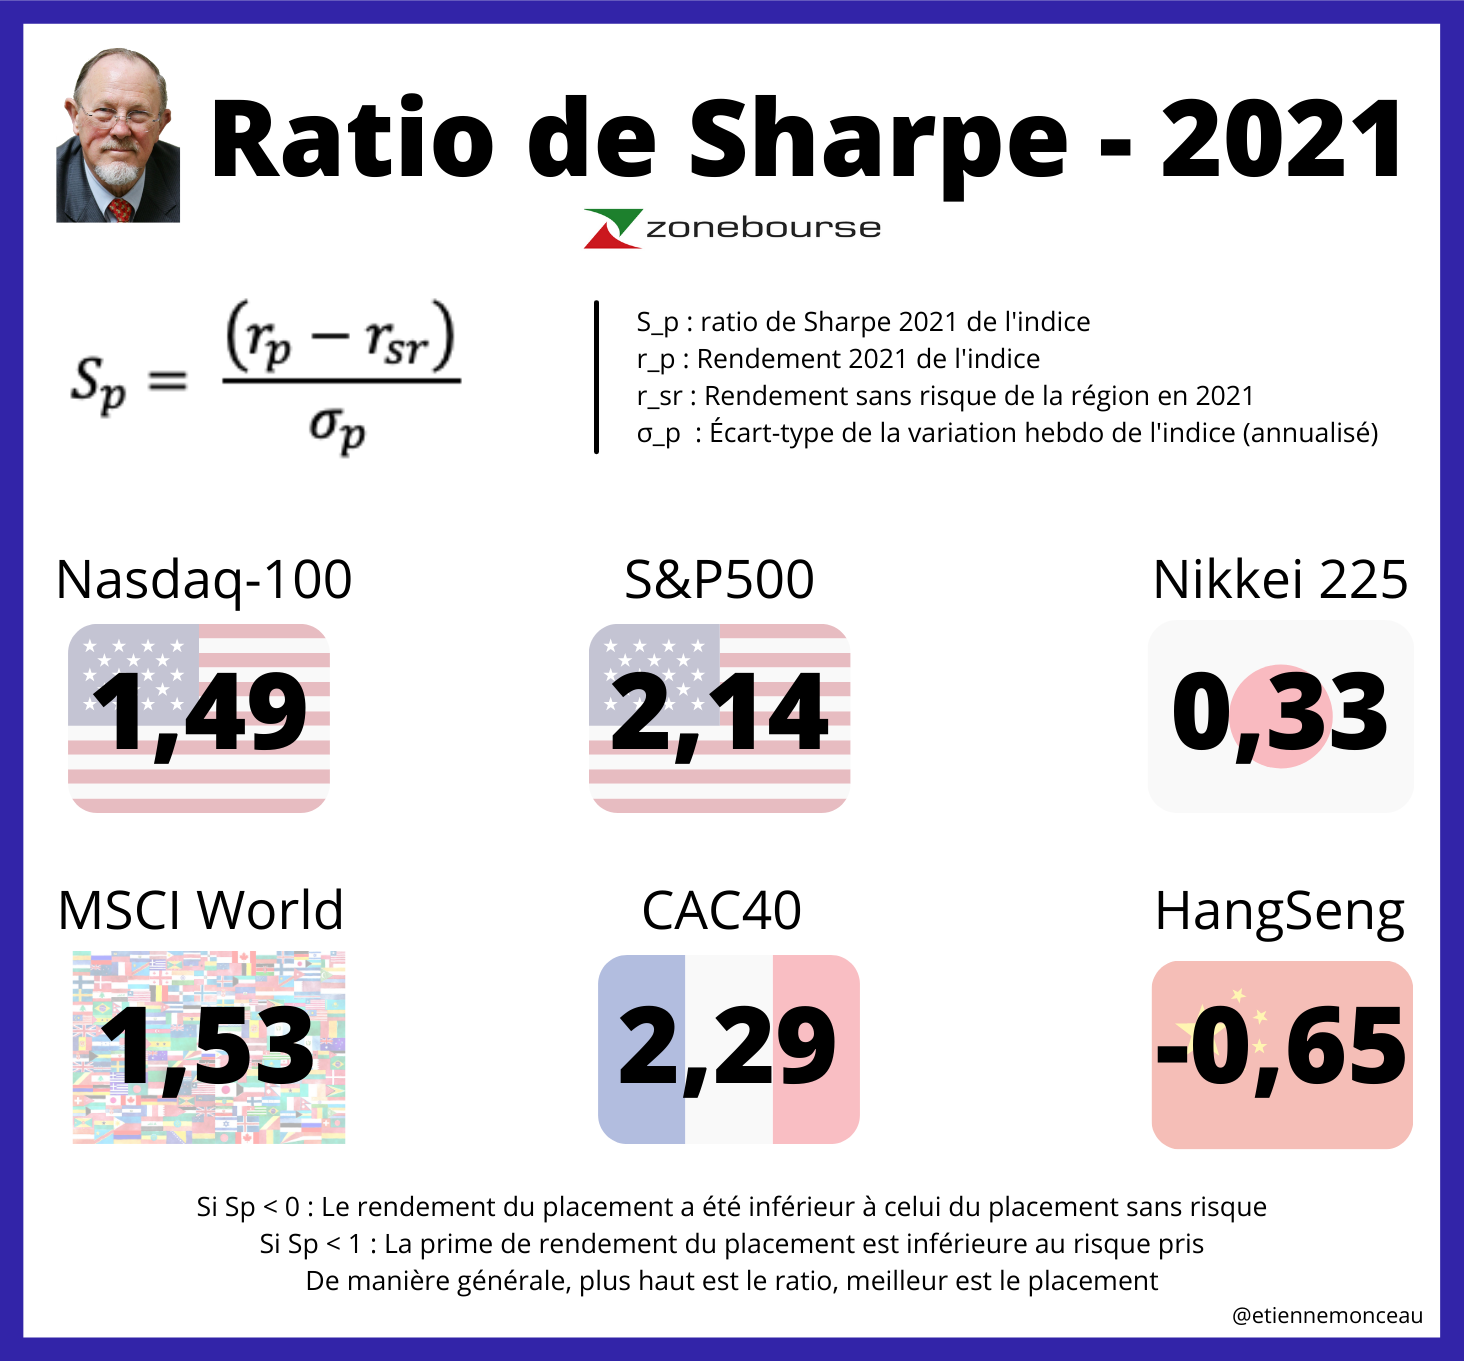 Ratio de Sharpe 2021 de plusieurs indices